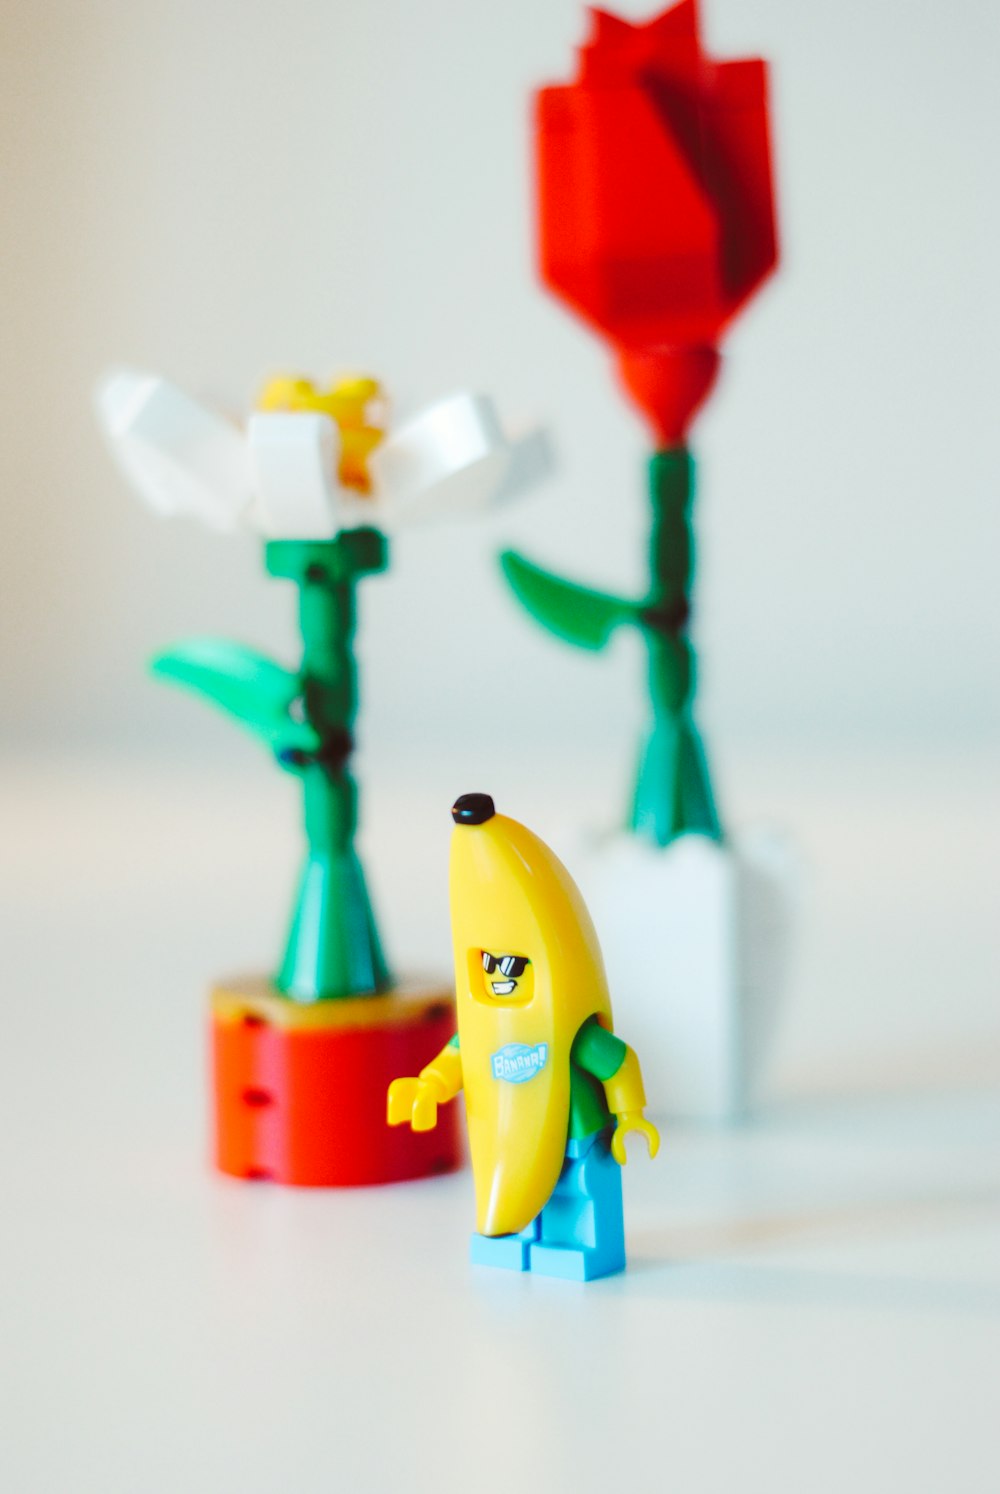 banana figure toy